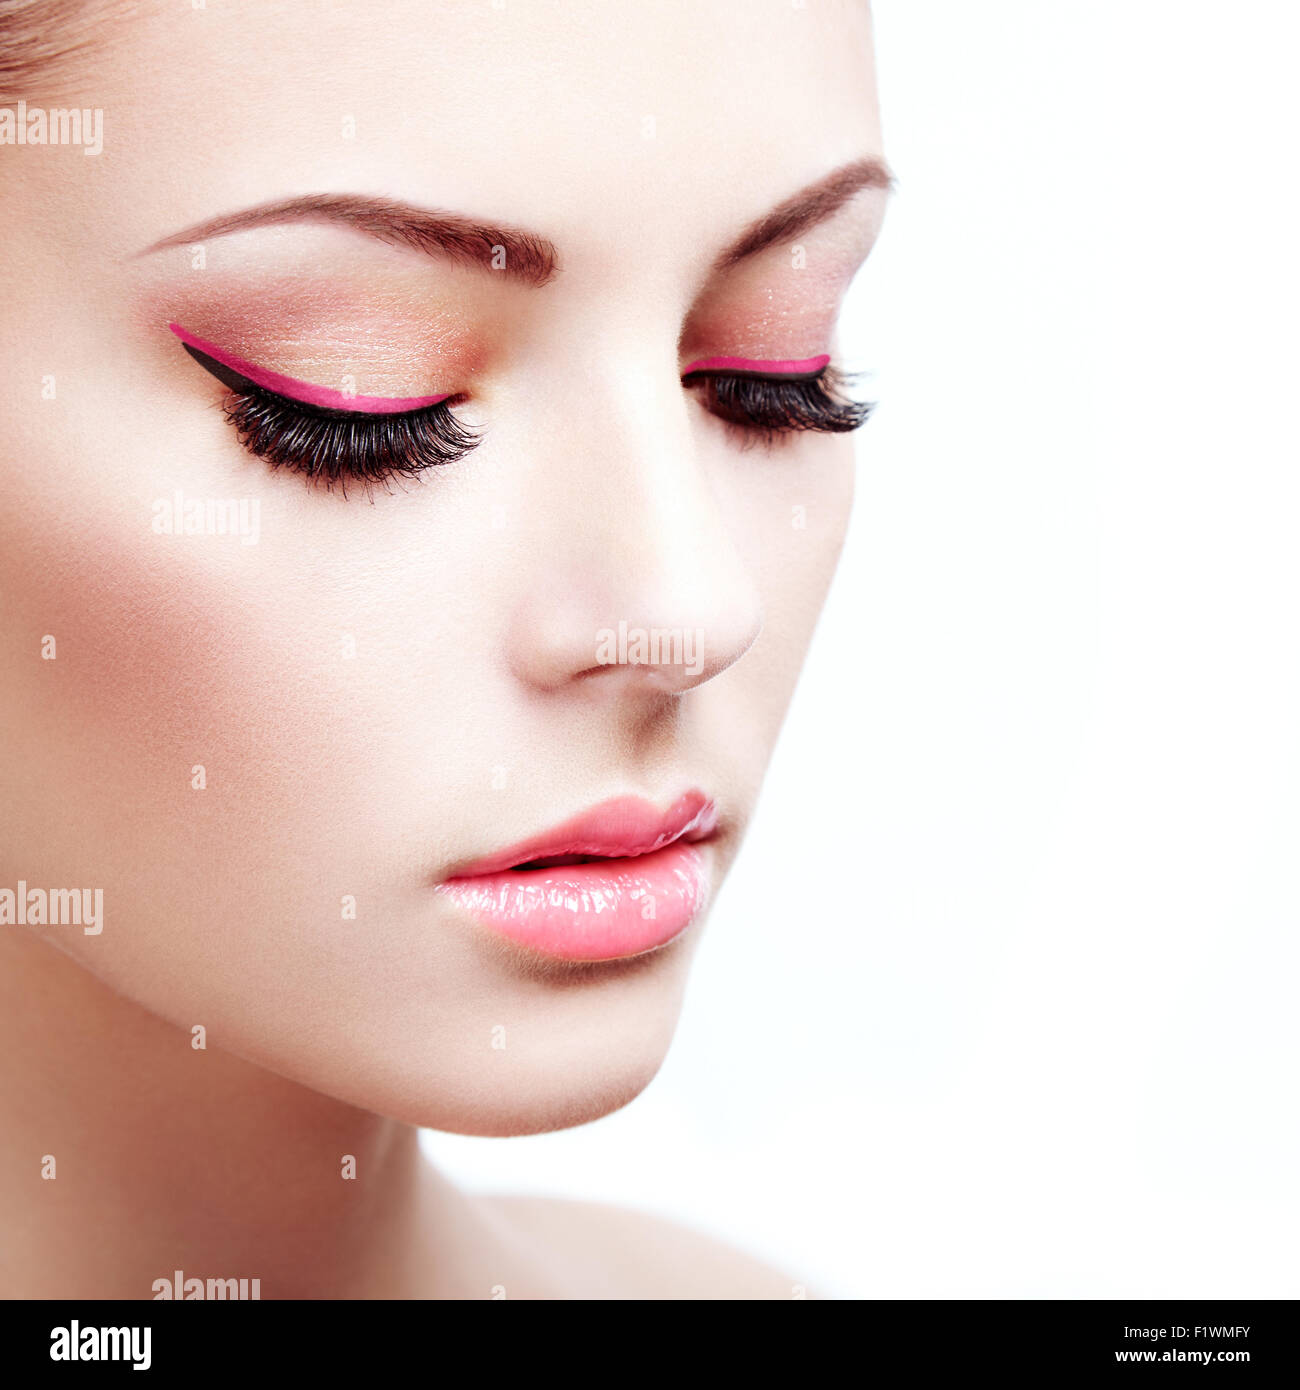 Beautiful Woman Face Perfect Makeup Beauty Fashion Stock Photo Alamy